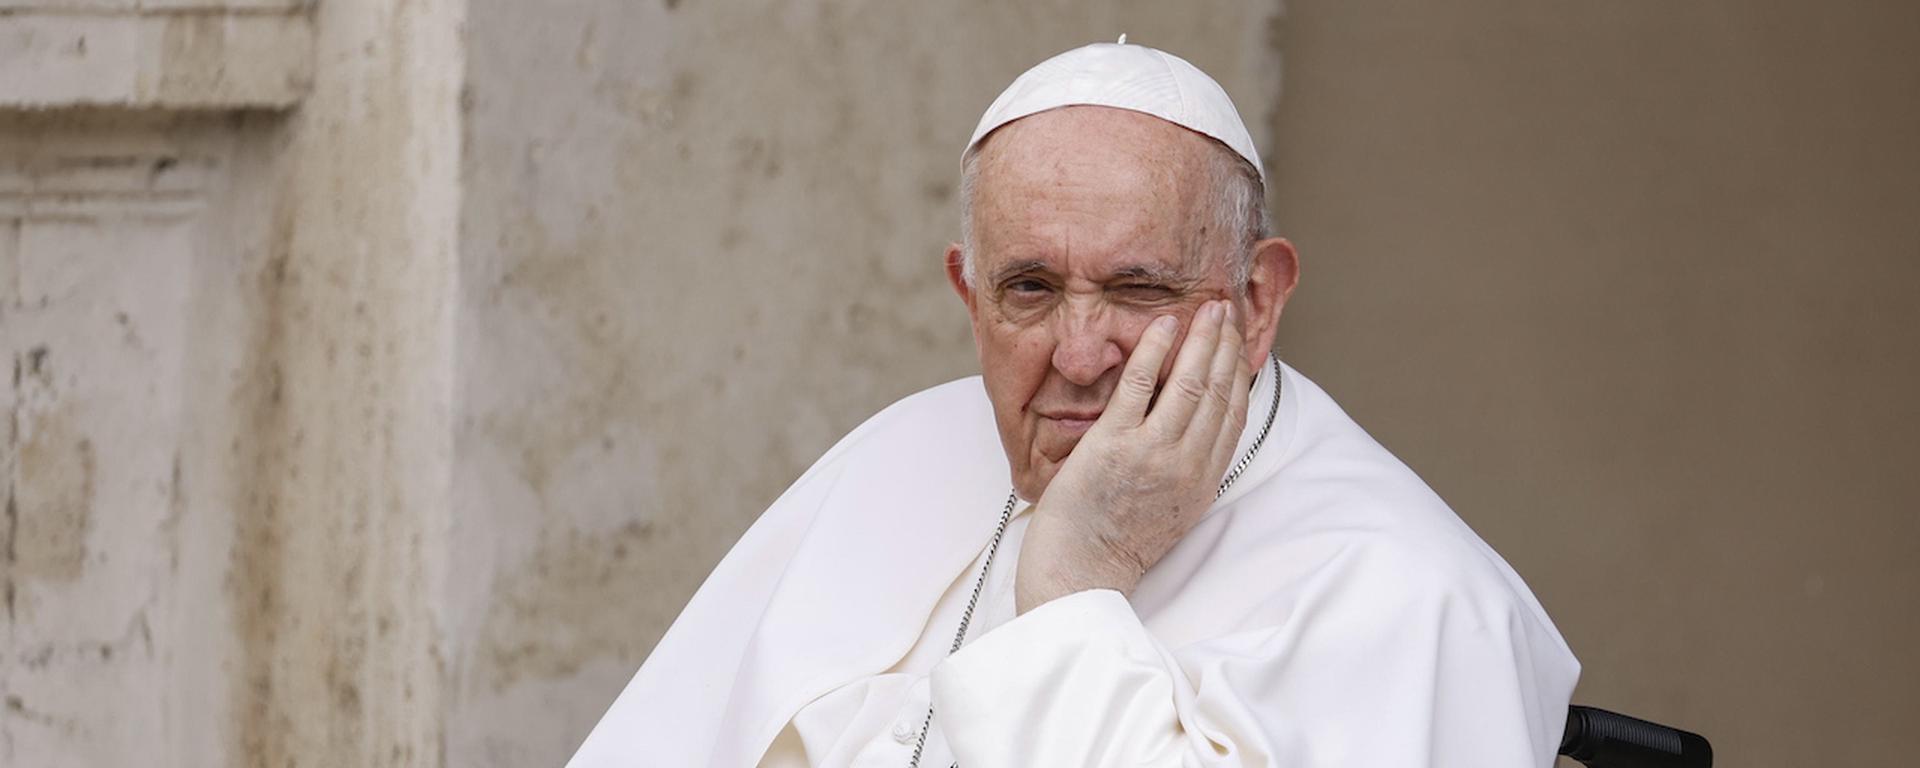 La sombra de la renuncia: ¿Cómo afecta a la figura de Francisco la muerte de Benedicto XVI?